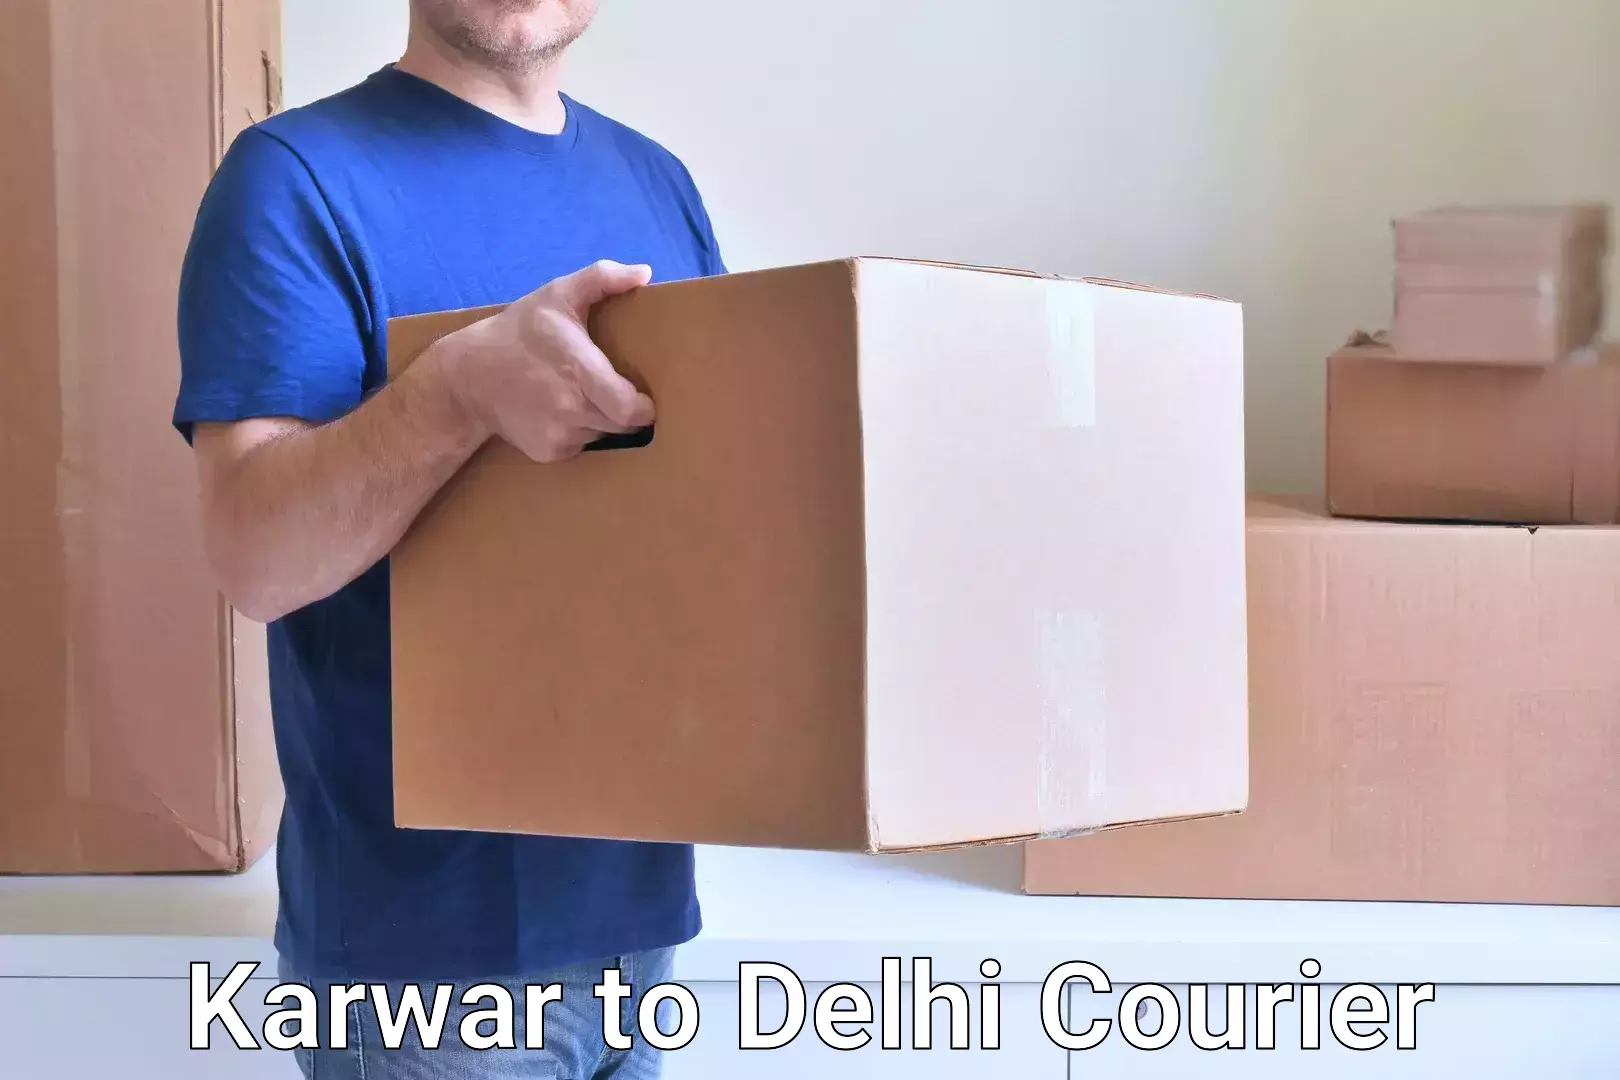 Next-generation courier services Karwar to Delhi